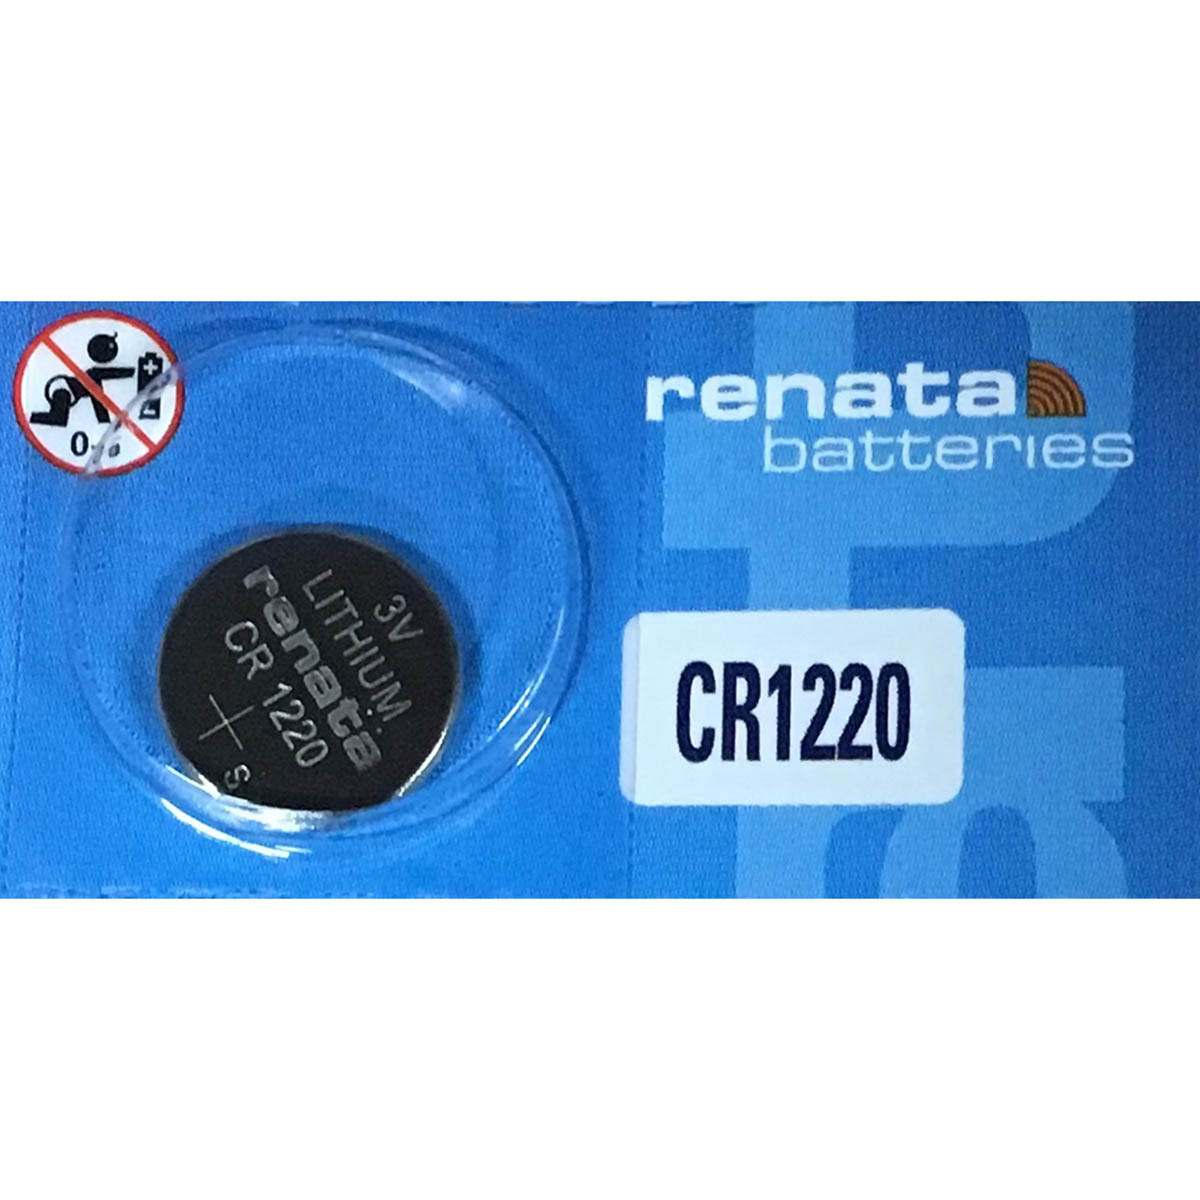 Panasonic CR1220 Battery 3V Lithium Coin Cell, Bulk